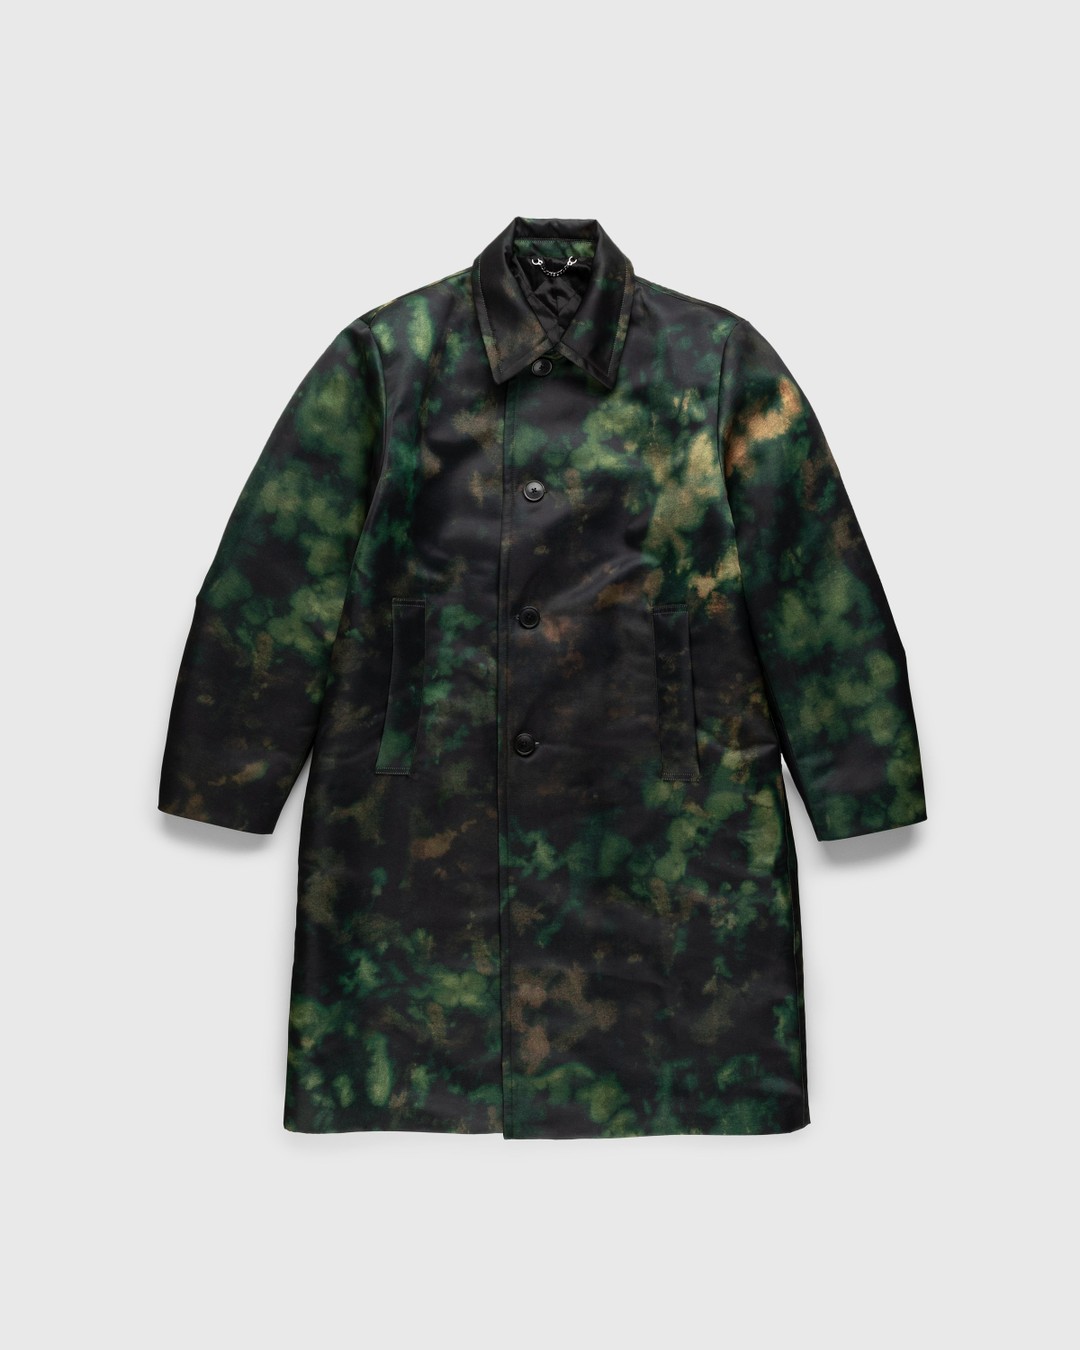 Dries van Noten – Redmore Coat Green - Outerwear - Green - Image 1